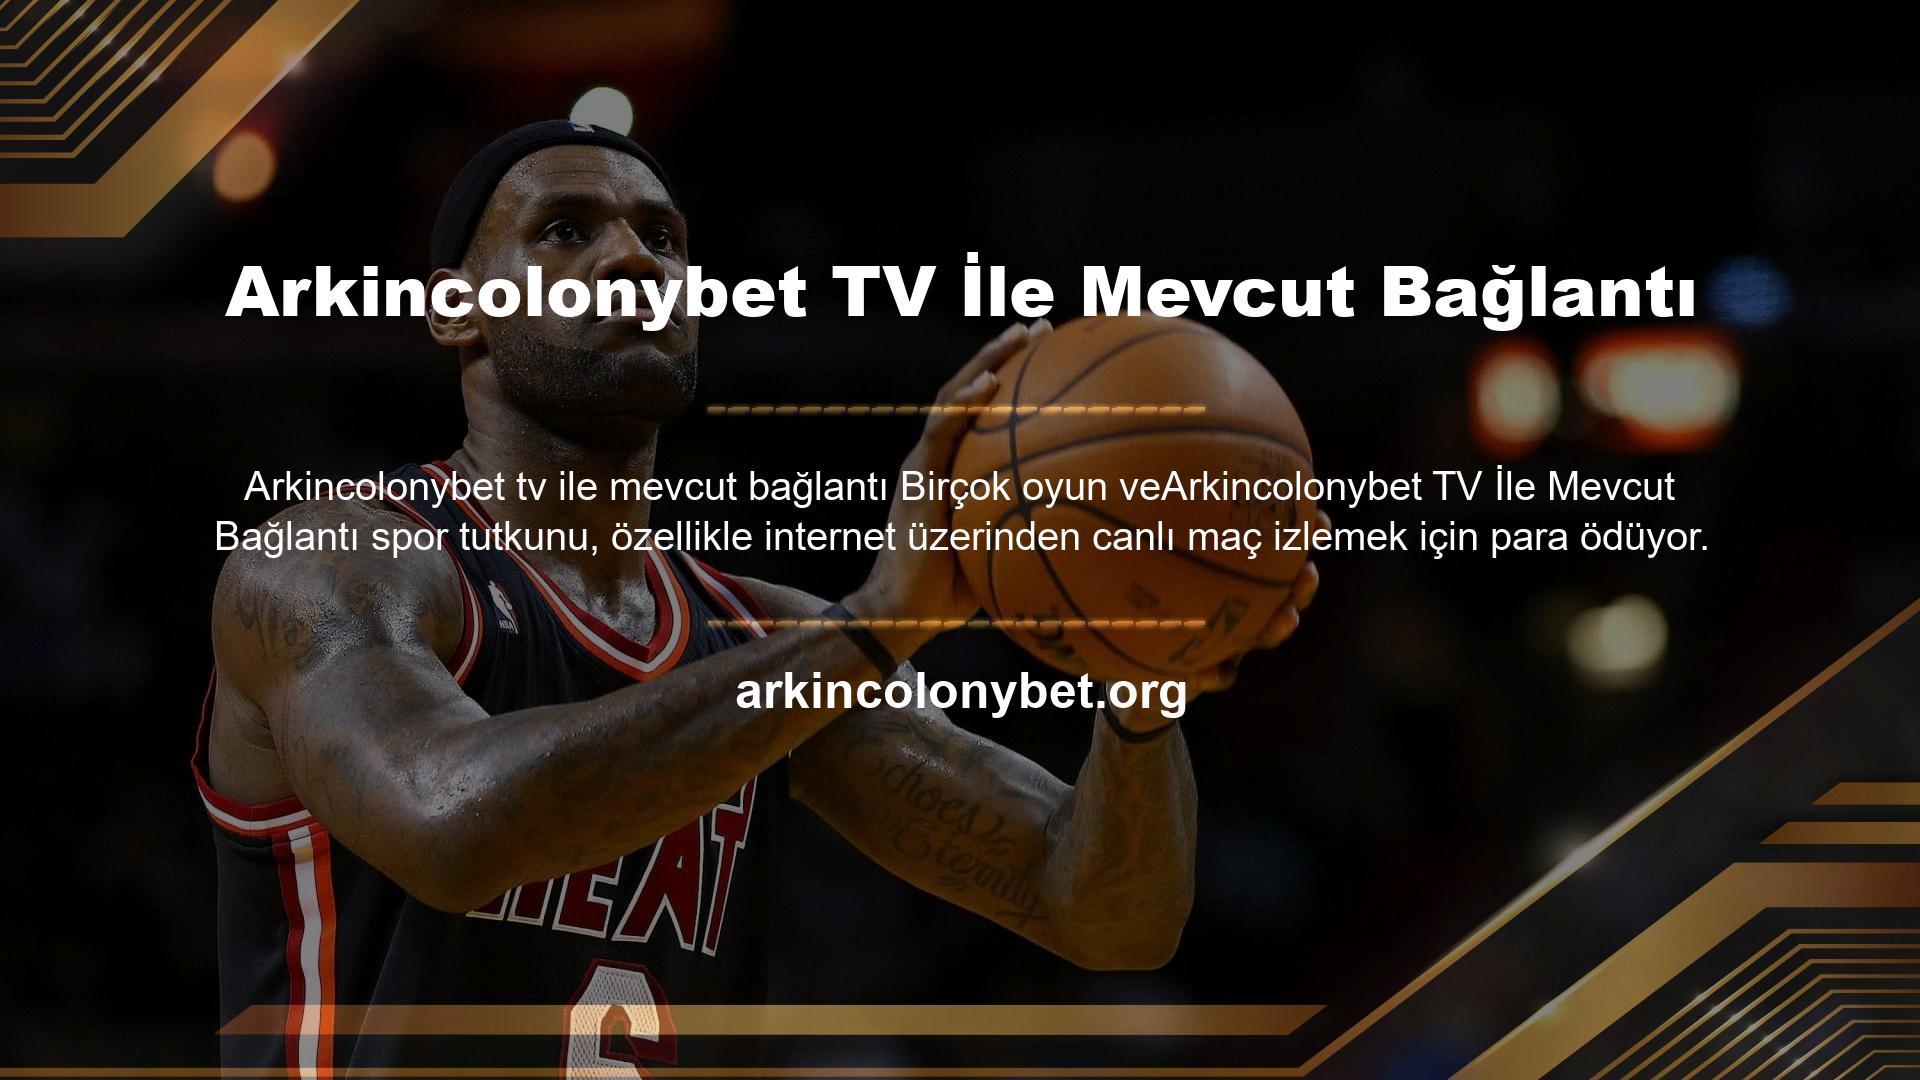 Arkincolonybet TV, kullanıcılarına ücretsiz canlı oyunlar sunmaktadır